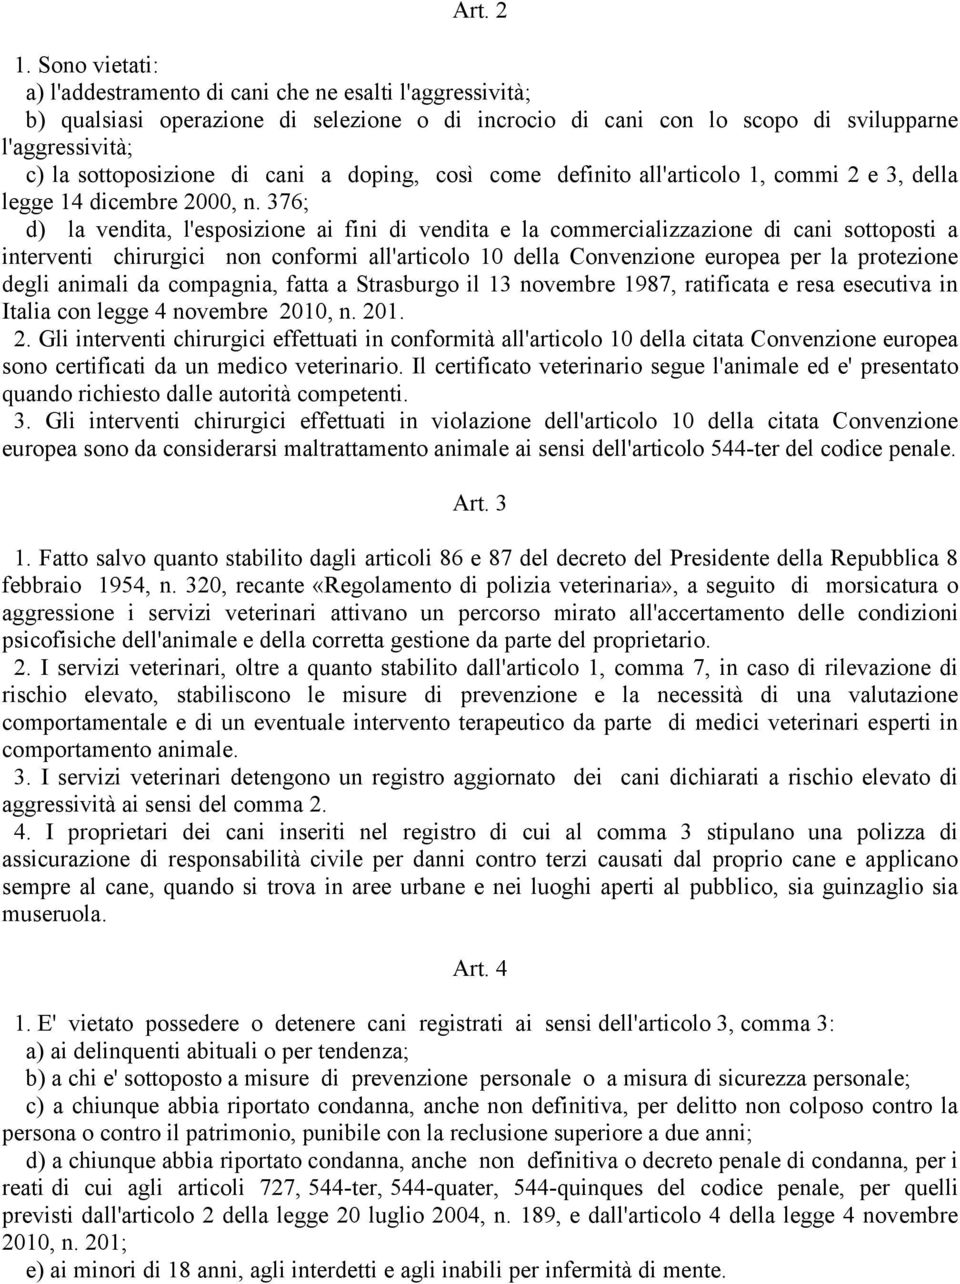 cani a doping, così come definito all'articolo 1, commi 2 e 3, della legge 14 dicembre 2000, n.